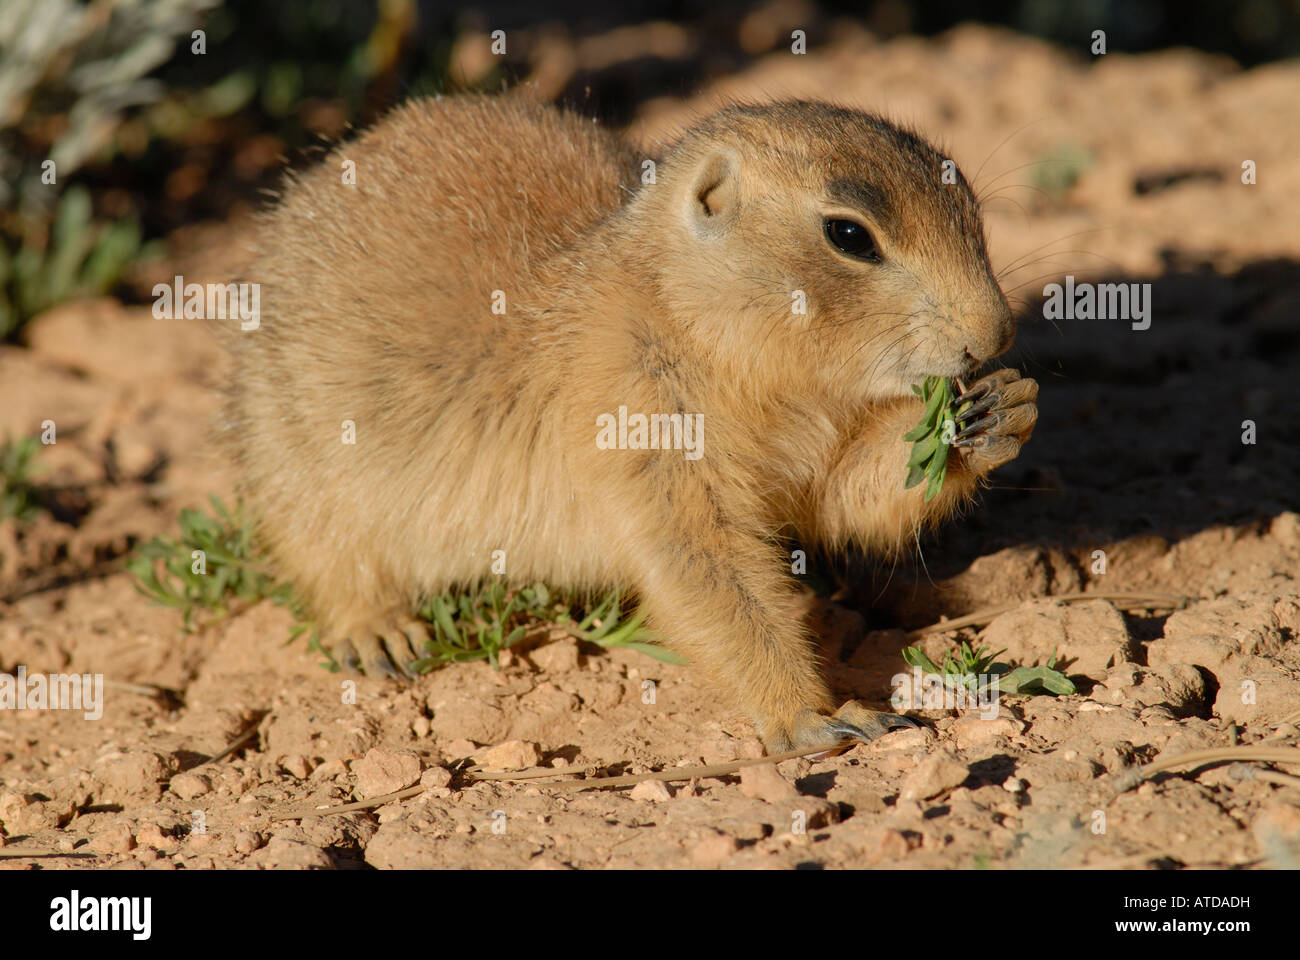 Stock photo of a Utah prairie dog feeding on forbs. Stock Photo